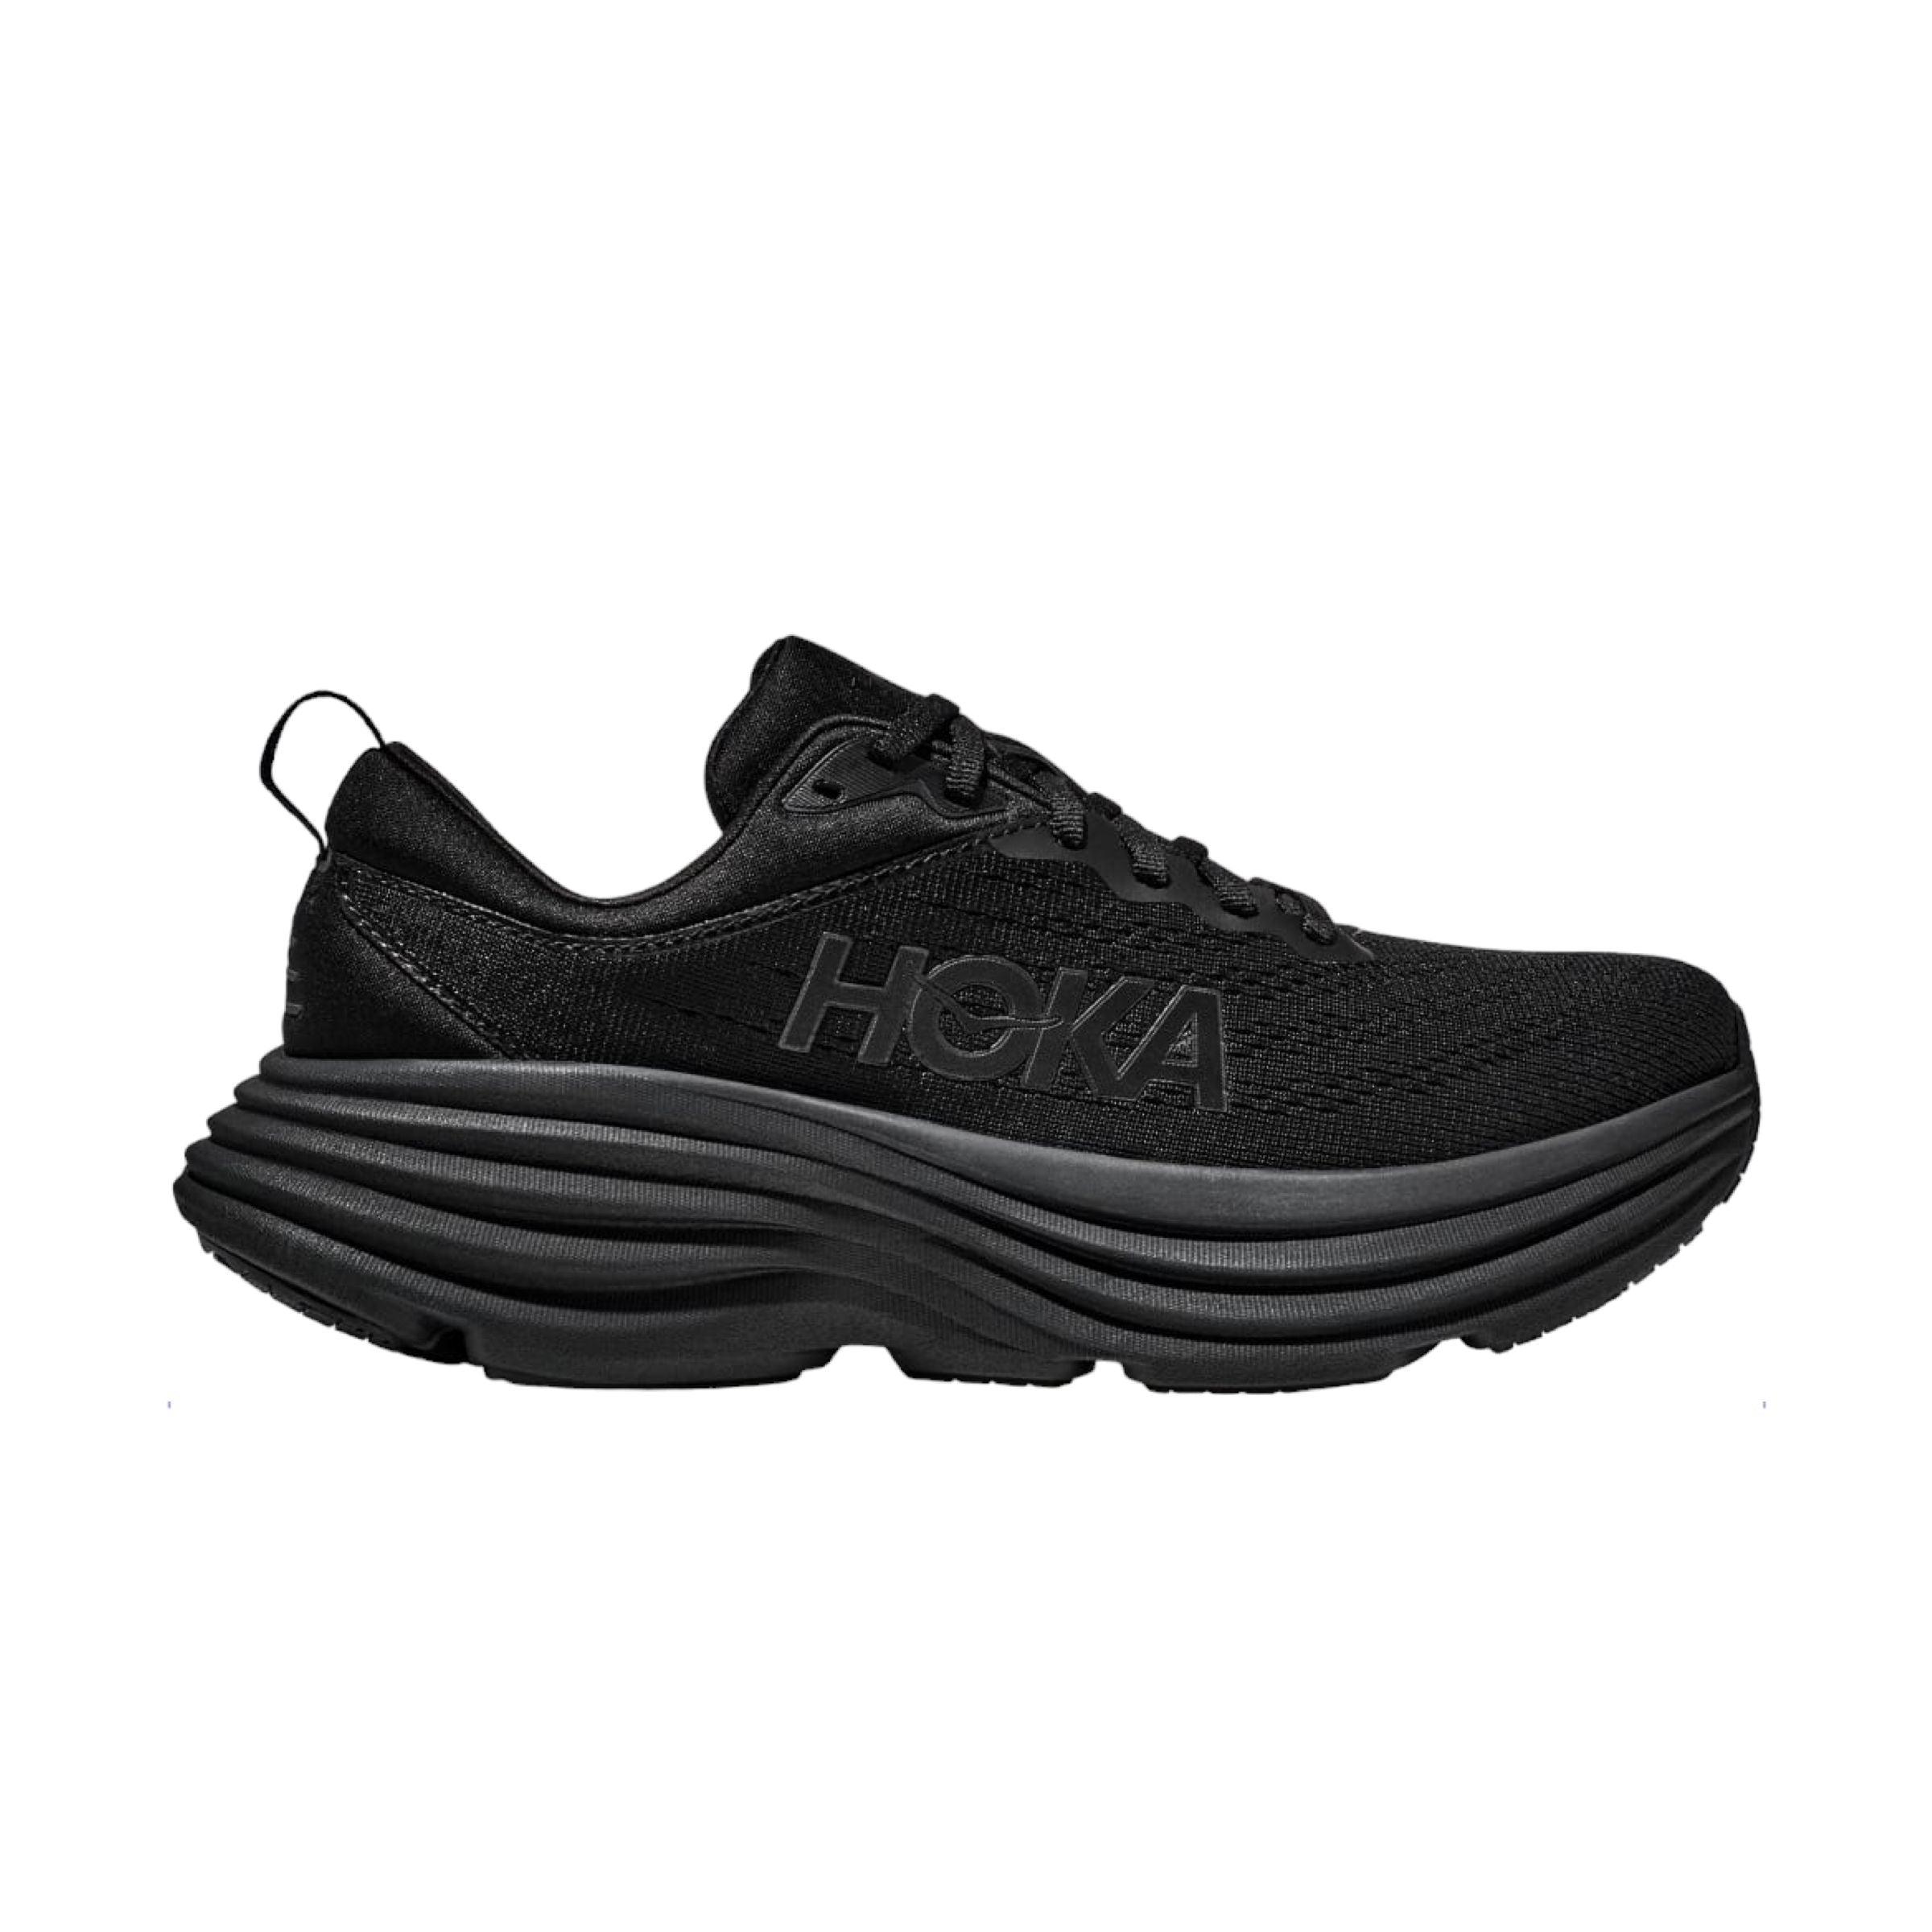 Women's Bondi 8 Shoes Black/Black 